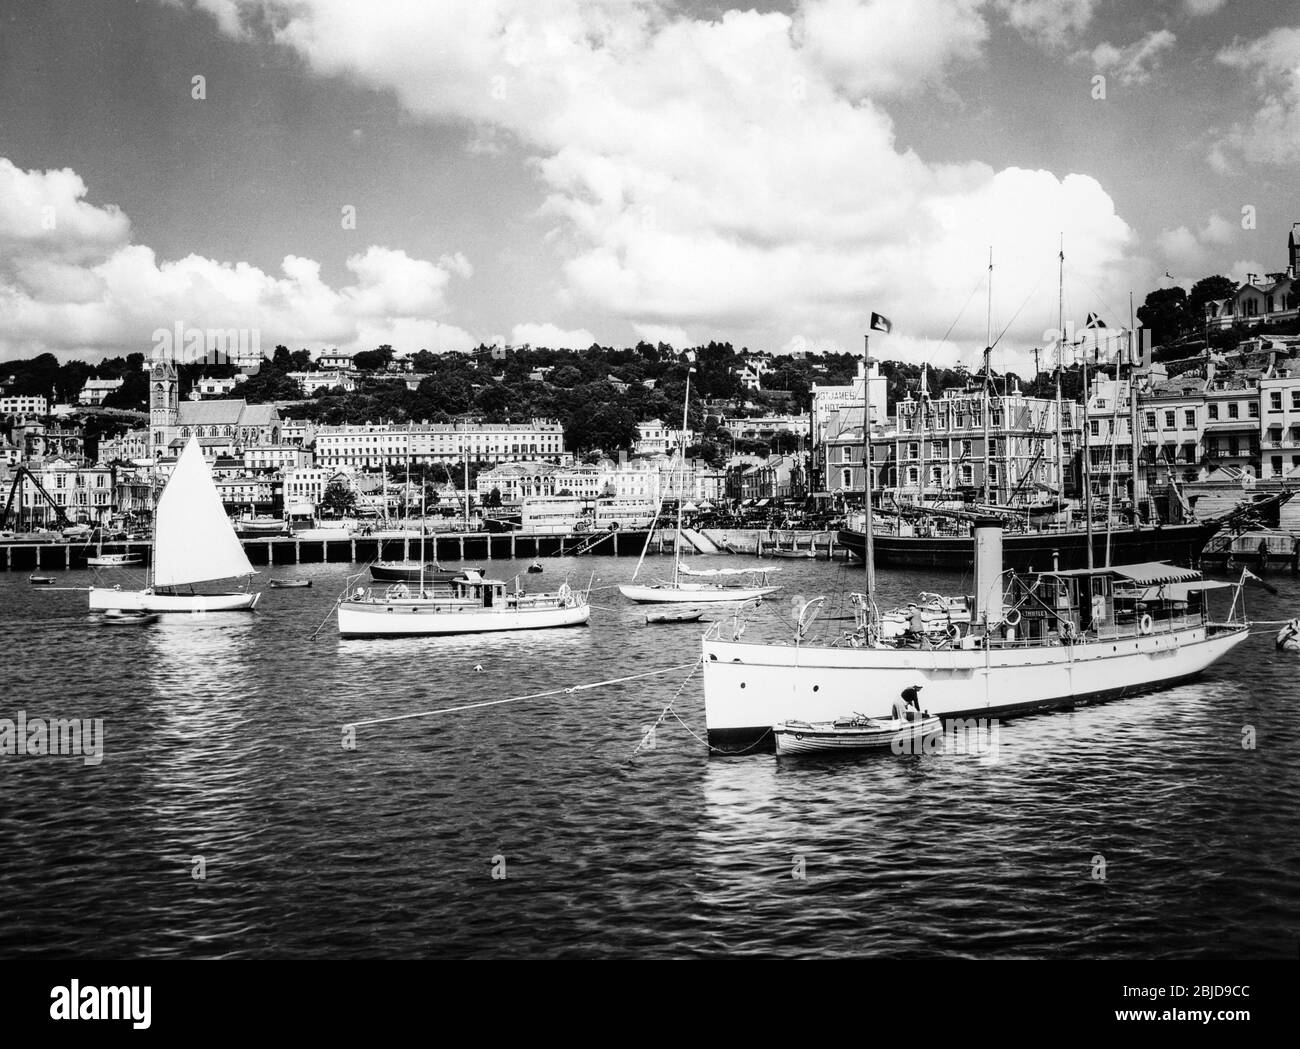 Photo noir et blanc vintage du début du XXe siècle montrant le port de Torquay sur la côte sud de l'Angleterre. La photo montre divers bateaux et bateaux dans le port. L'hôtel White House, l'hôtel Norfolk, l'hôtel St. James et l'hôtel Regina sont également visibles. Banque D'Images